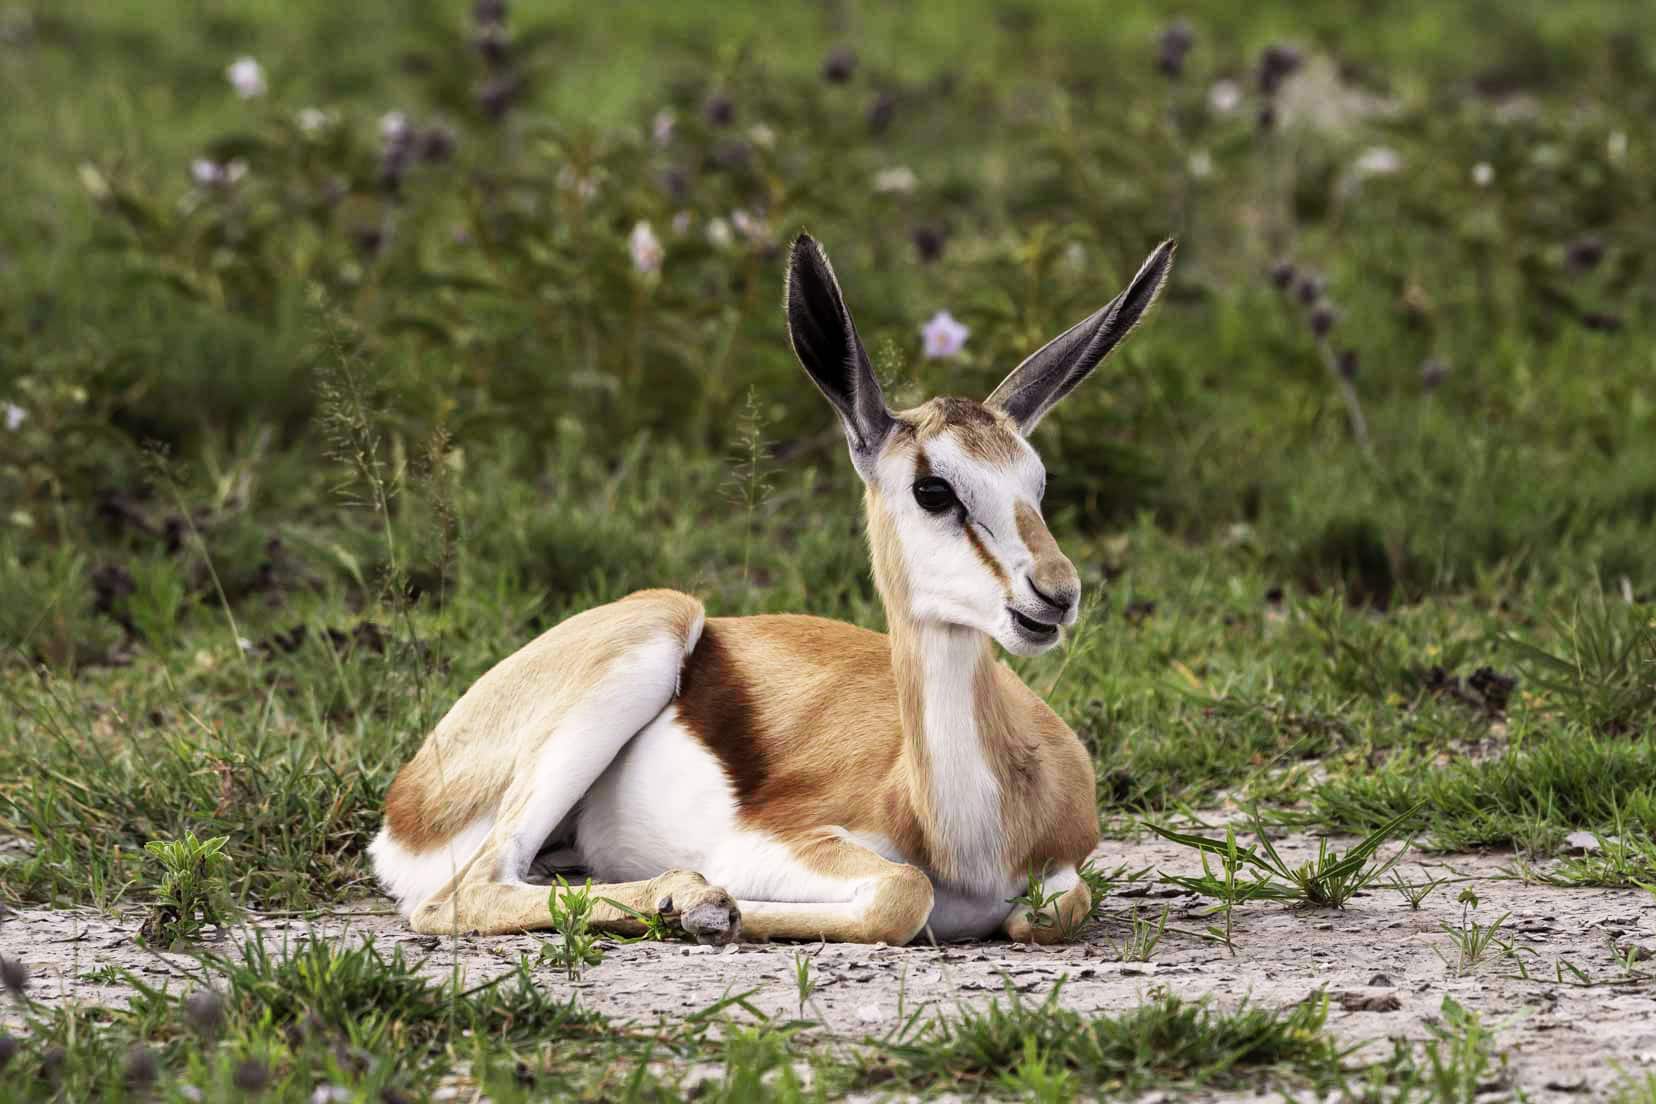 Baby springbok sat in grass